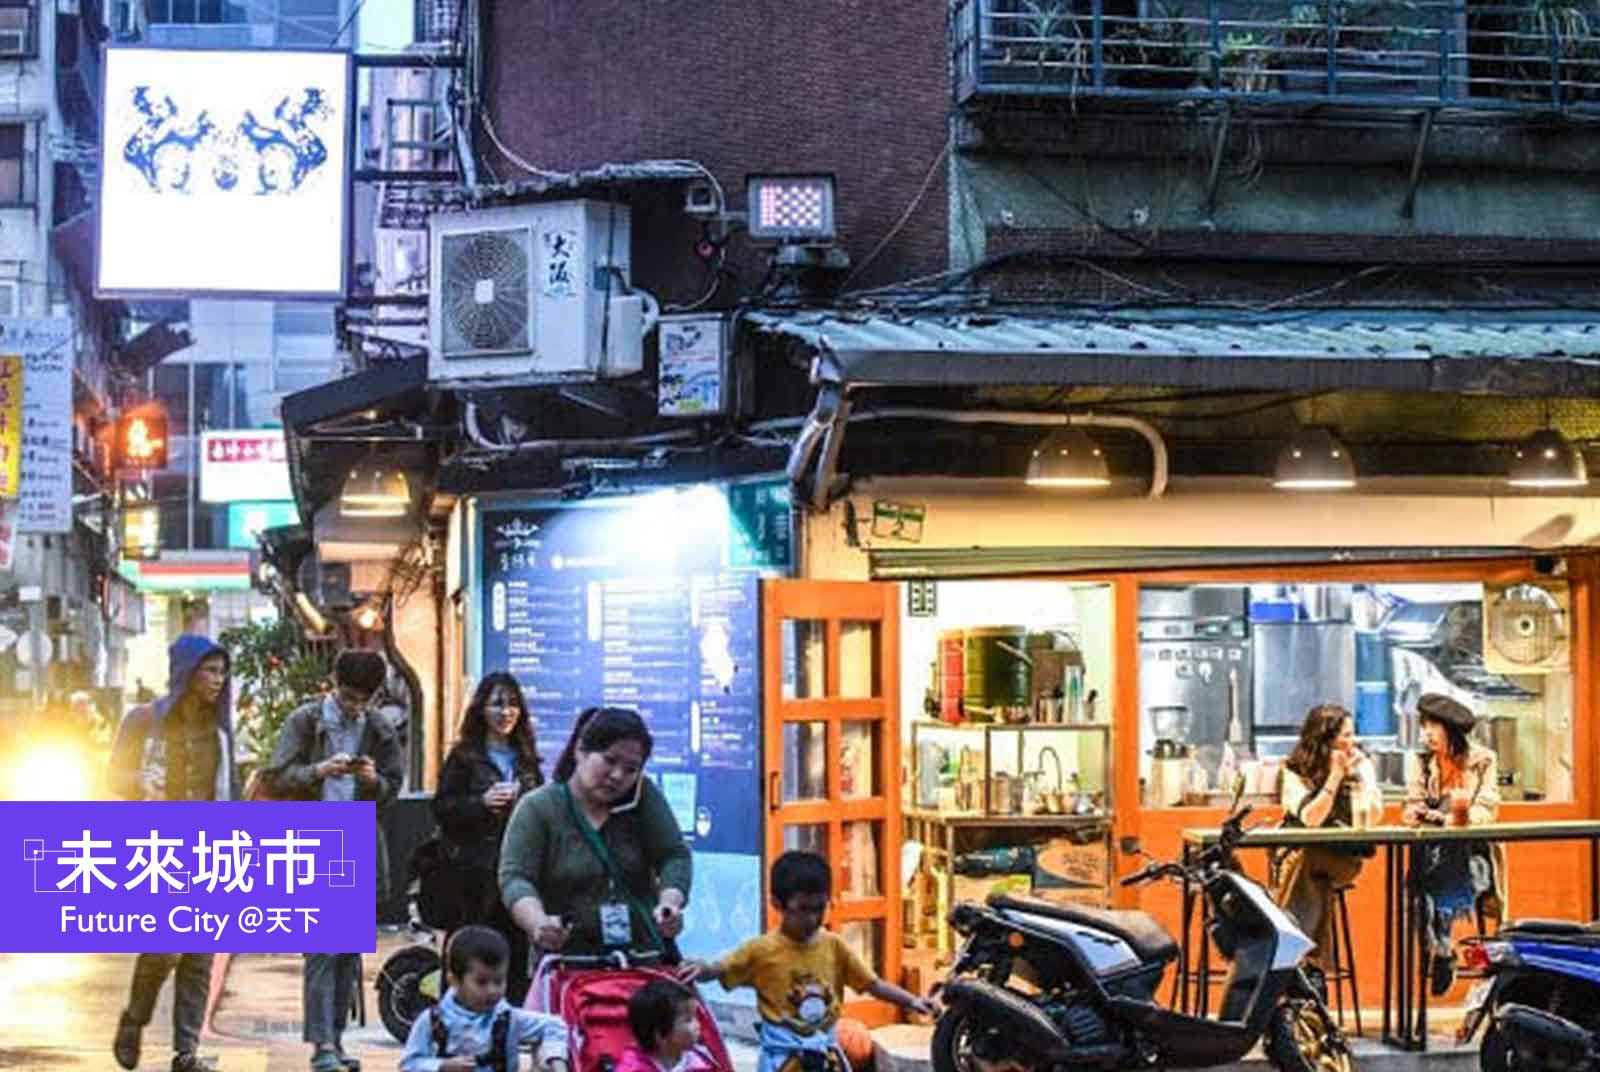 中山區一帶有不少特色小店，吸引逛街人潮、帶動商圈經濟。